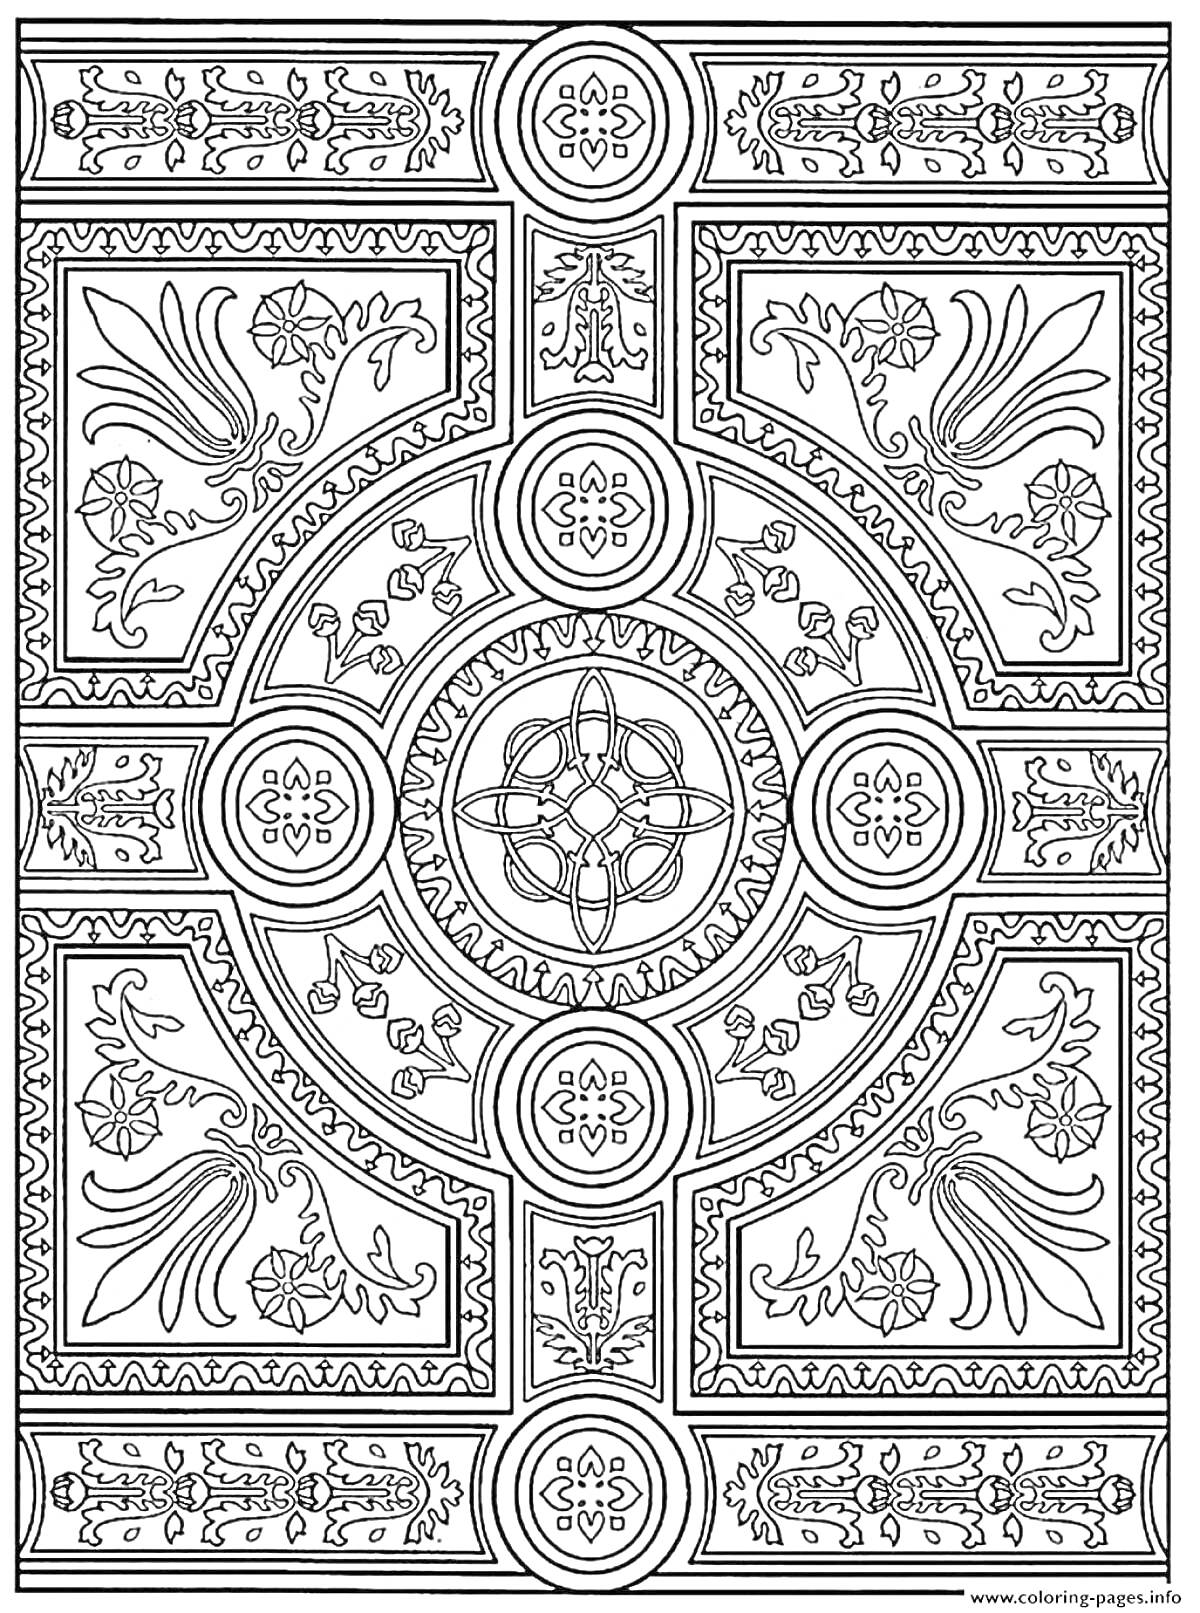 Раскраска Симметричный узор с цветами и геометрическими элементами